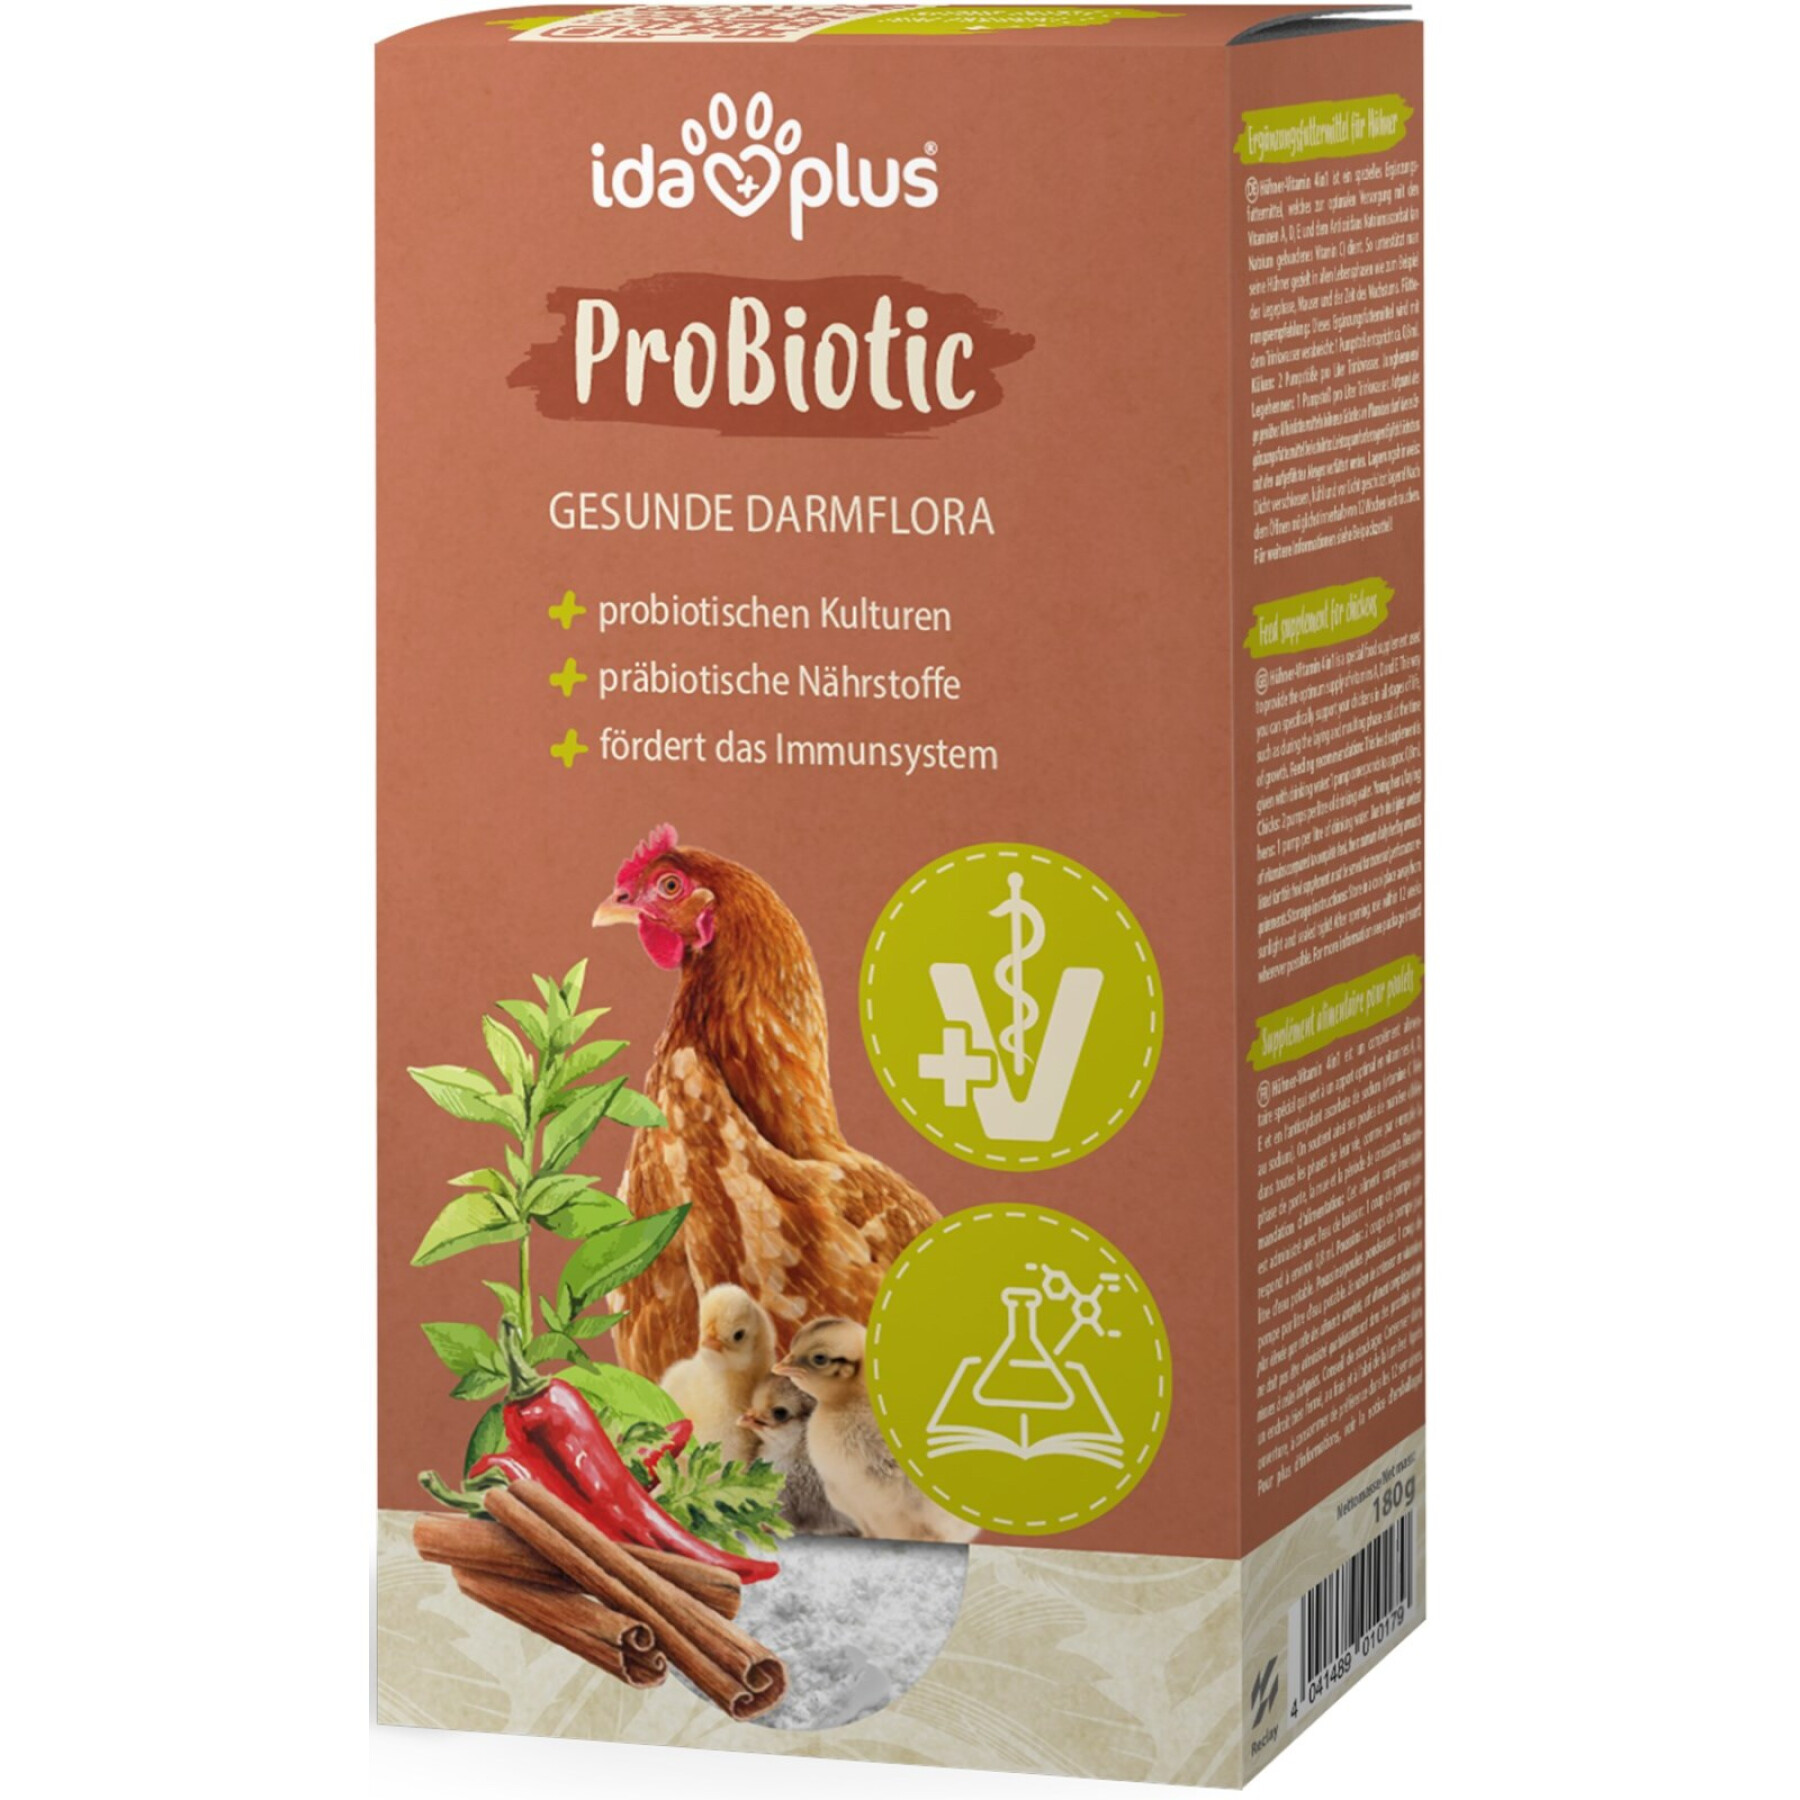 Integratore alimentare per pollame Ida Plus ProBiotic